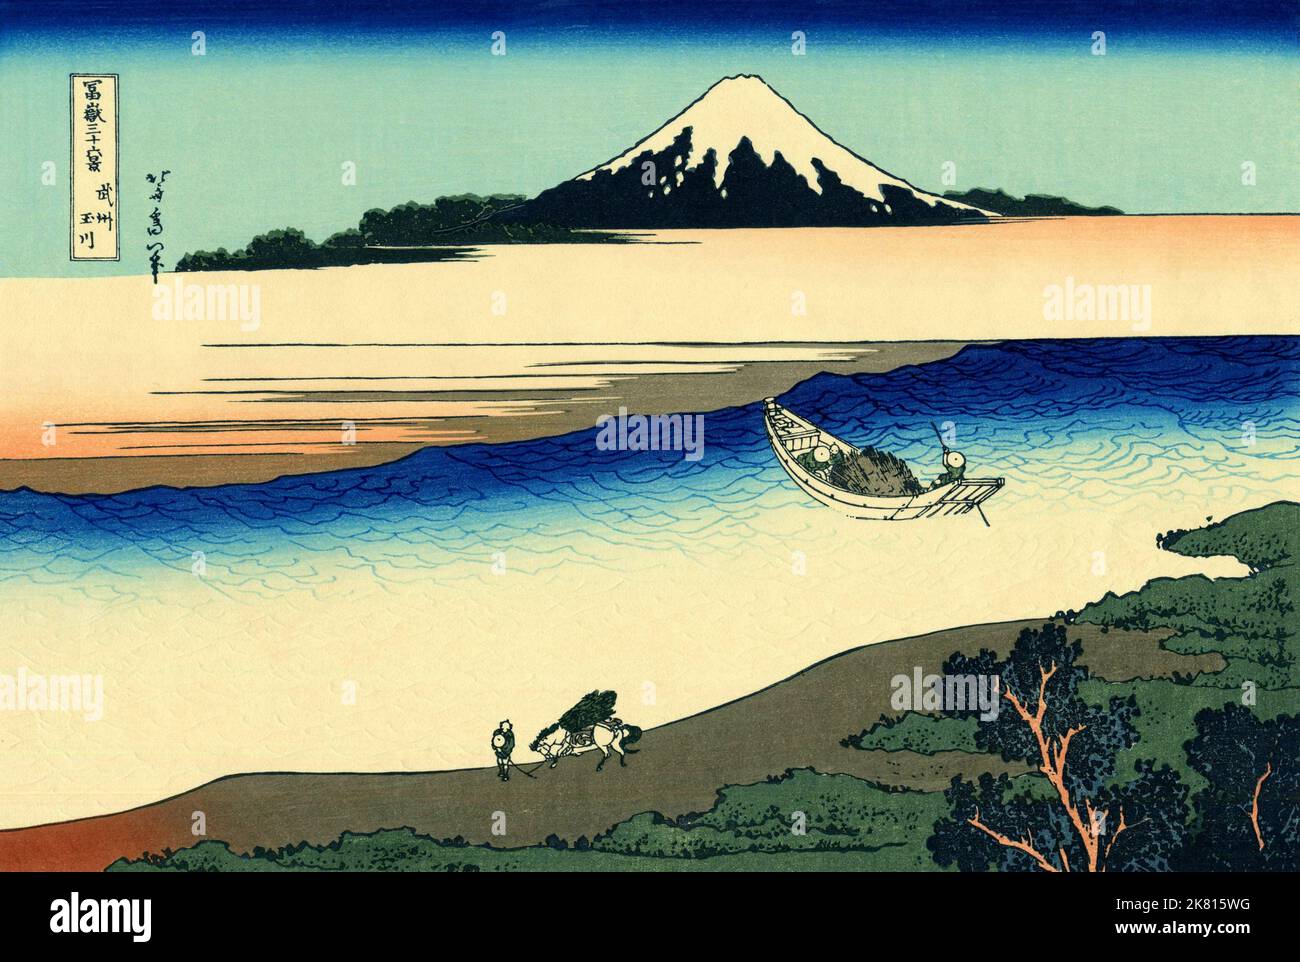 Japon: «rivière Tama dans la province de Musashi».Imprimé Ukiyo-e en blocs de bois de la série «trente-six vues du Mont Fuji» de Katsushika Hokusai (31 octobre 1760 - 10 mai 1849), c.1830. «36 vues du Mont Fuji» est une série «ukiyo-e» de grandes gravures sur bois de l'artiste Katsushika Hokusai.La série représente le Mont Fuji dans différentes saisons et conditions météorologiques à partir de divers endroits et distances.Il se compose en fait de 46 tirages créés entre 1826 et 1833.Les 36 premiers ont été inclus dans la publication originale et, en raison de leur popularité, 10 autres ont été ajoutés par la suite. Banque D'Images